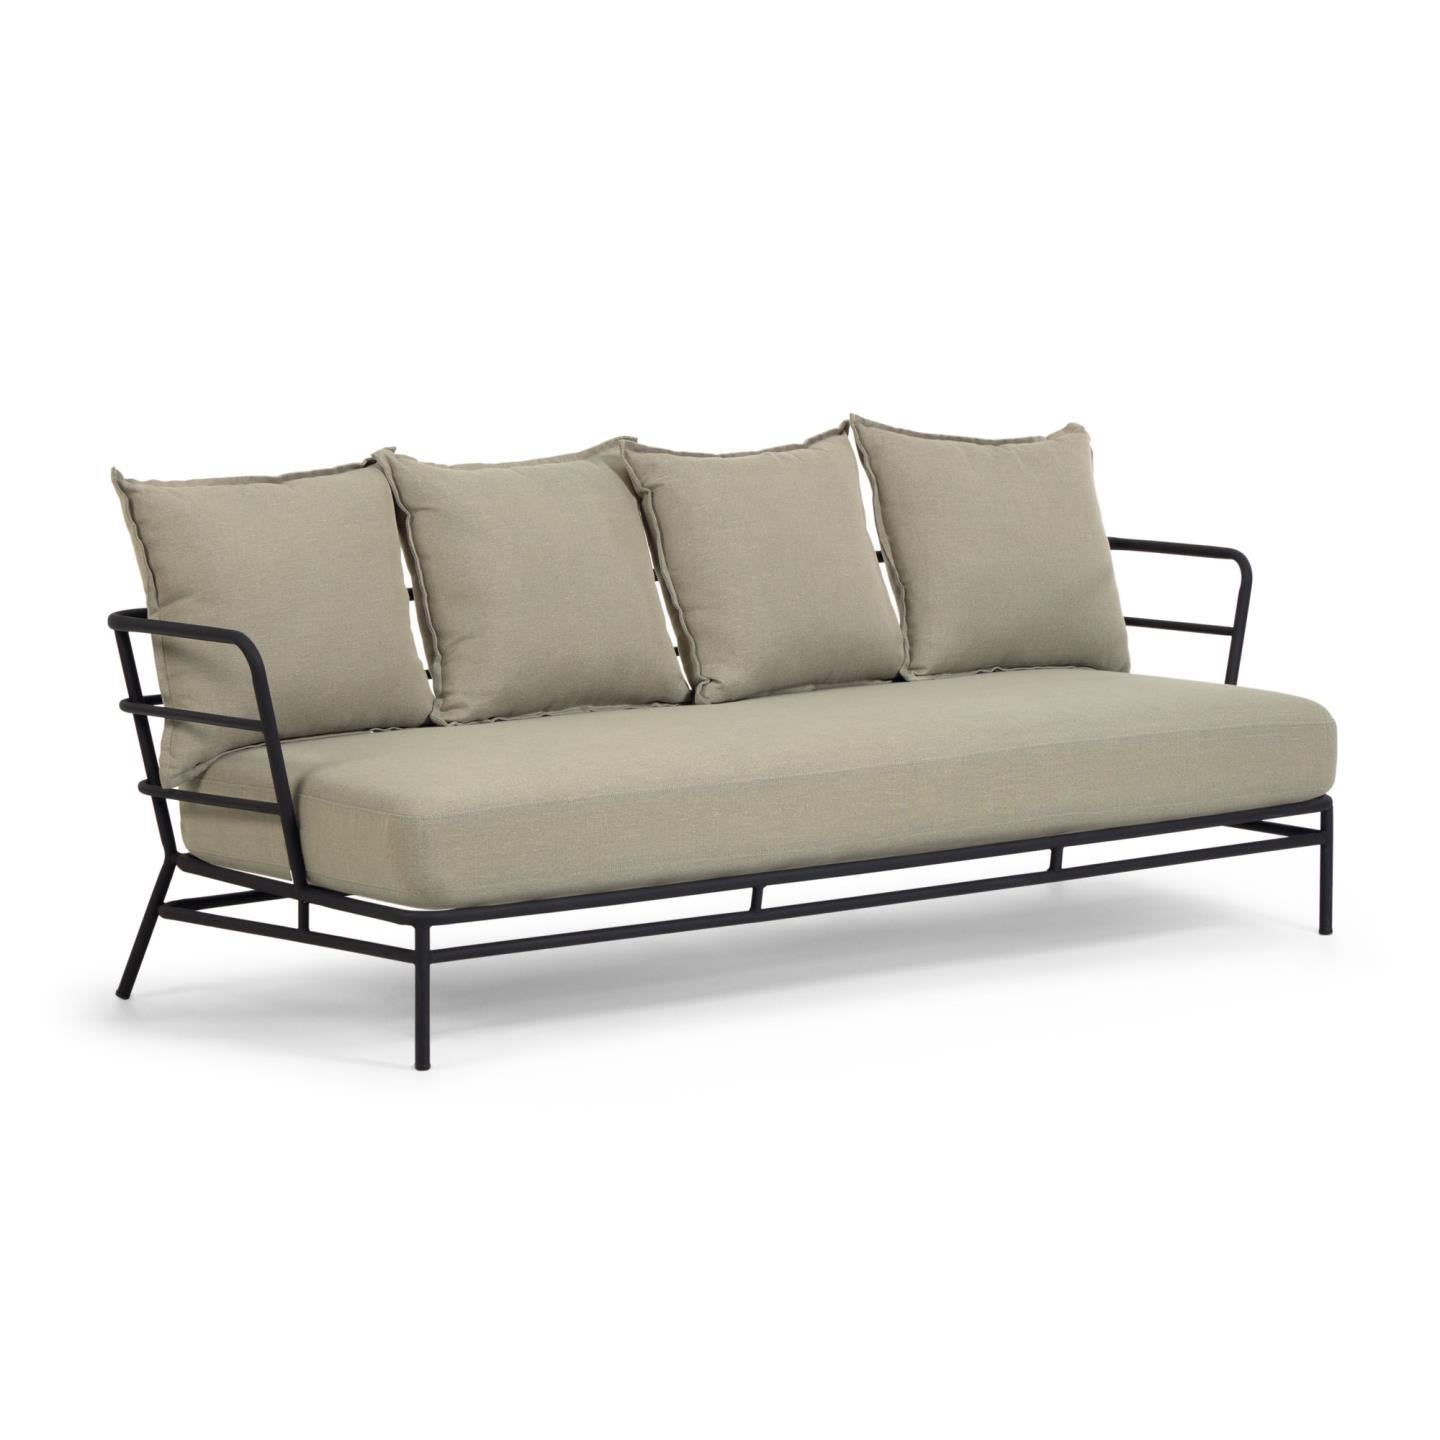 Mareluz 3 személyes kanapé fekete acélból, 197 cm